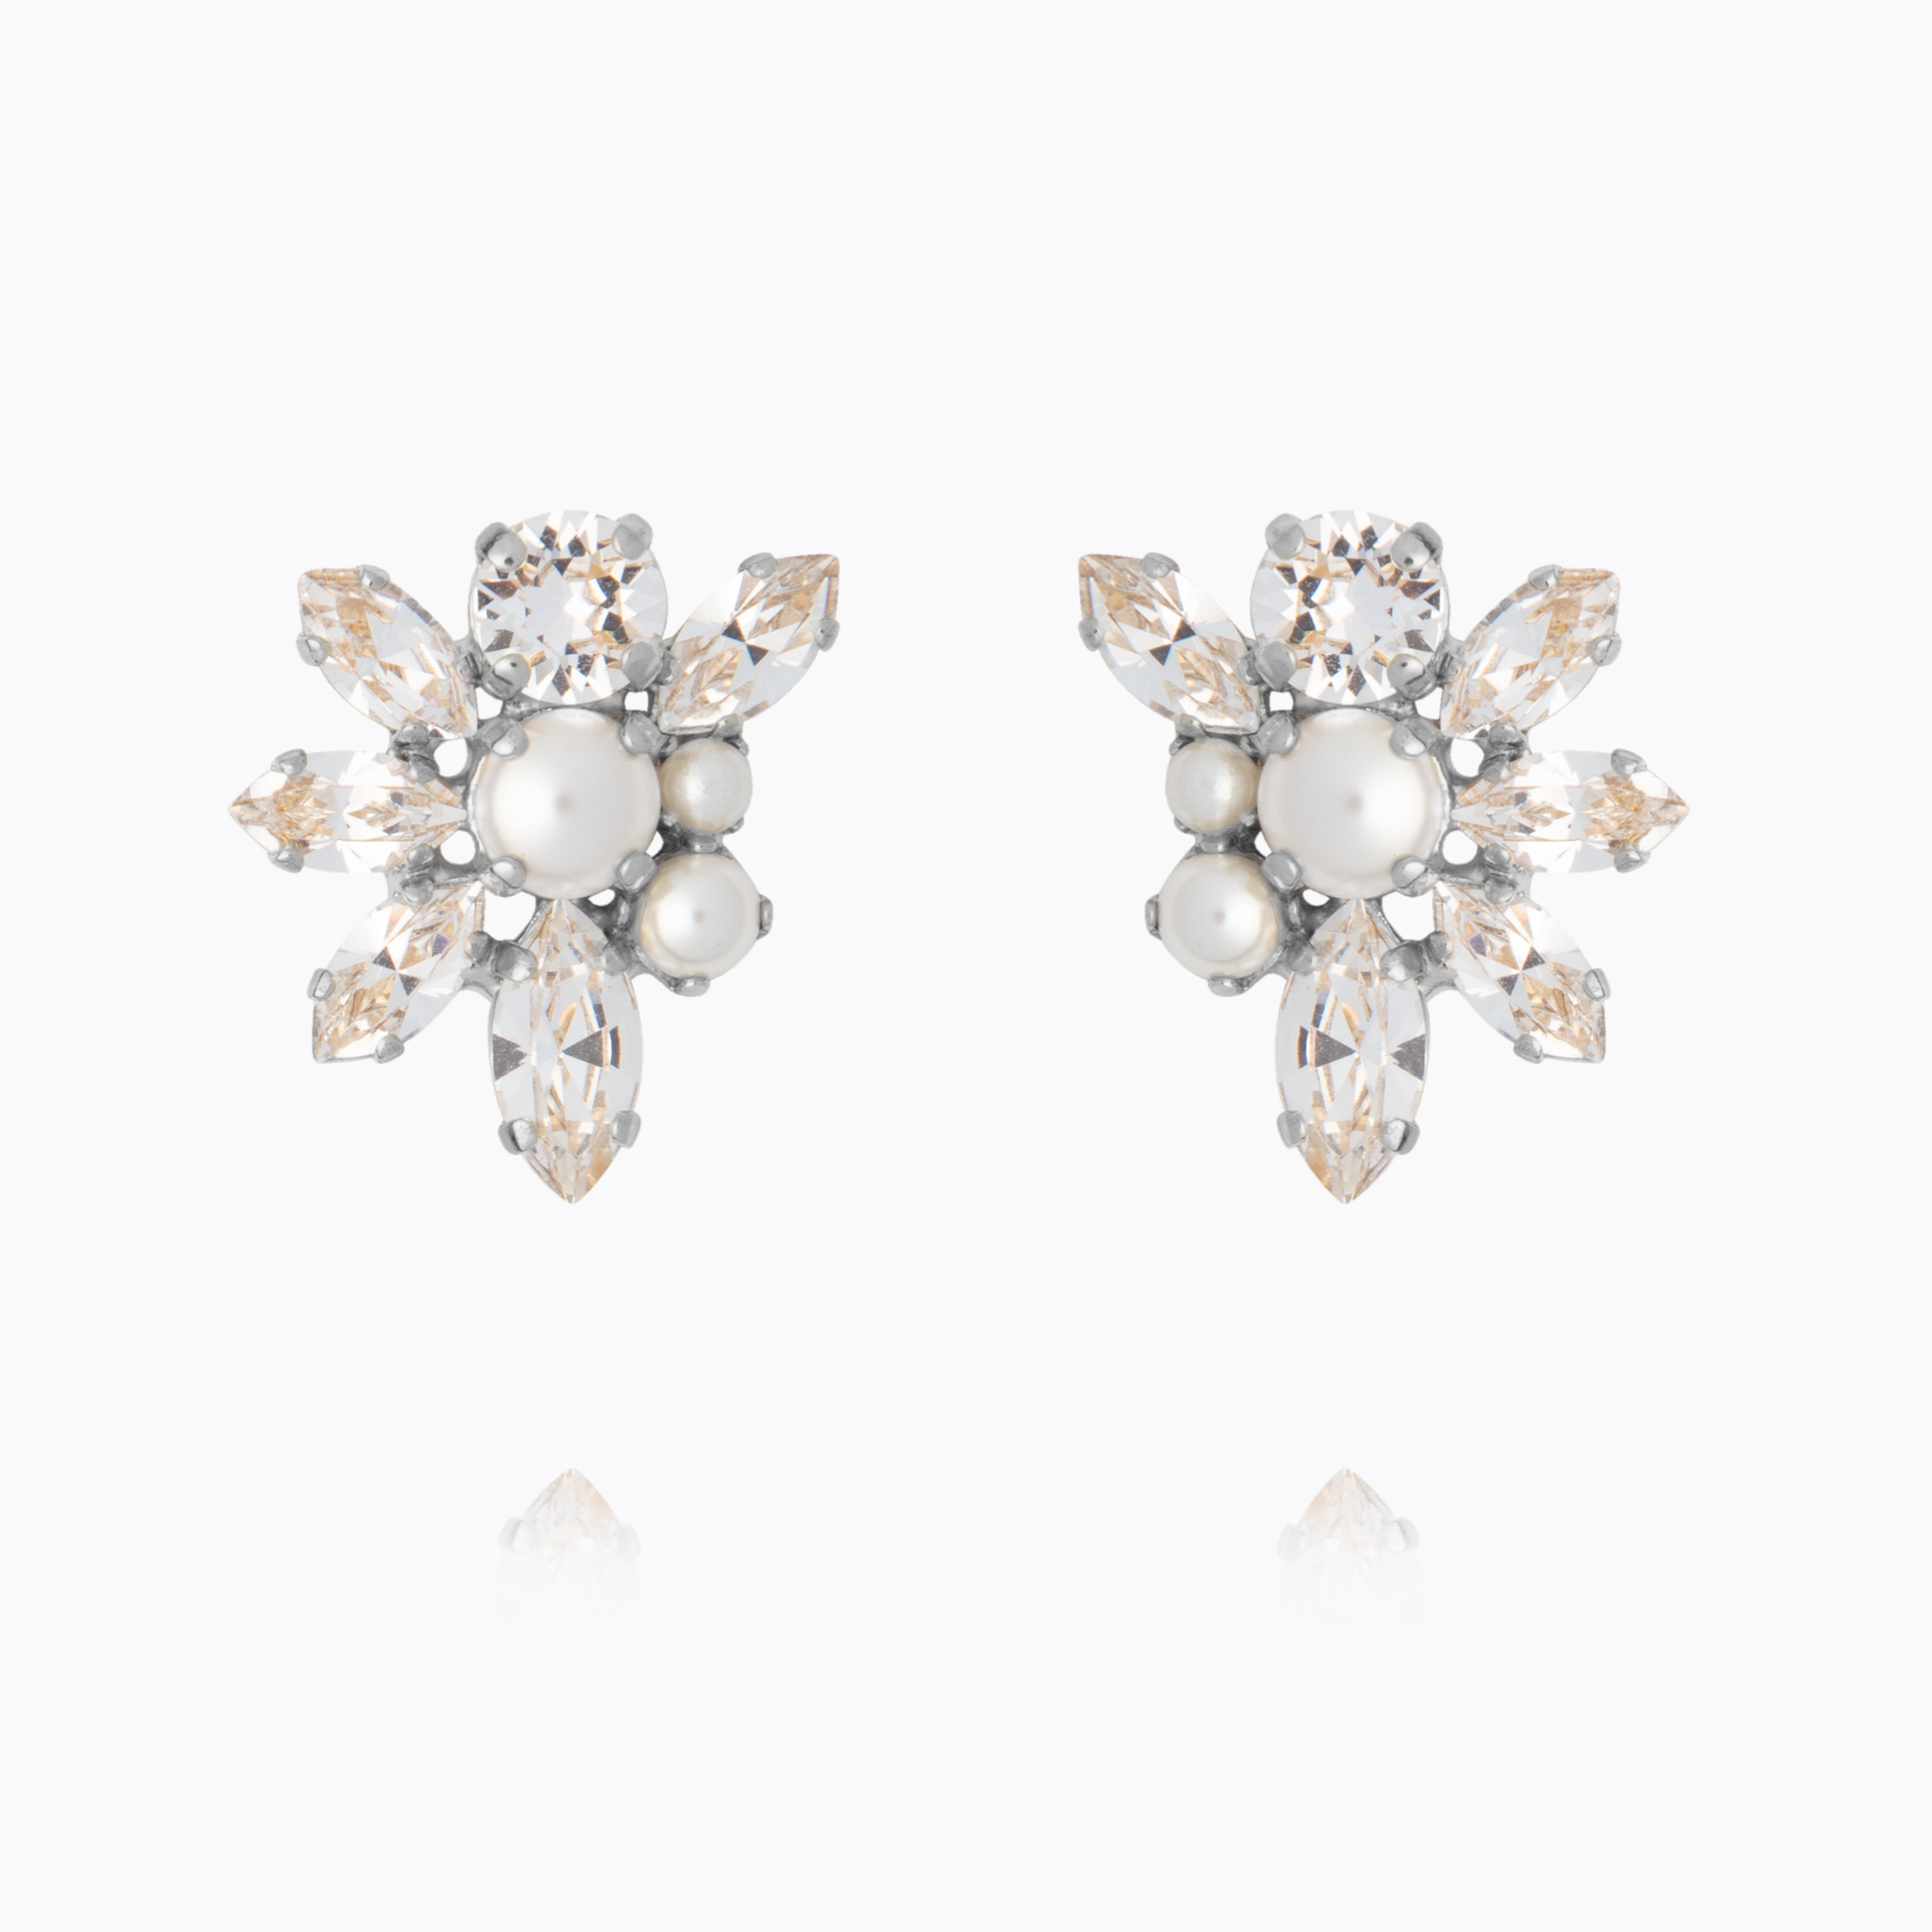 Caroline Svedbom - Floral Pearl Earrings Pearl Crystal Rhodium